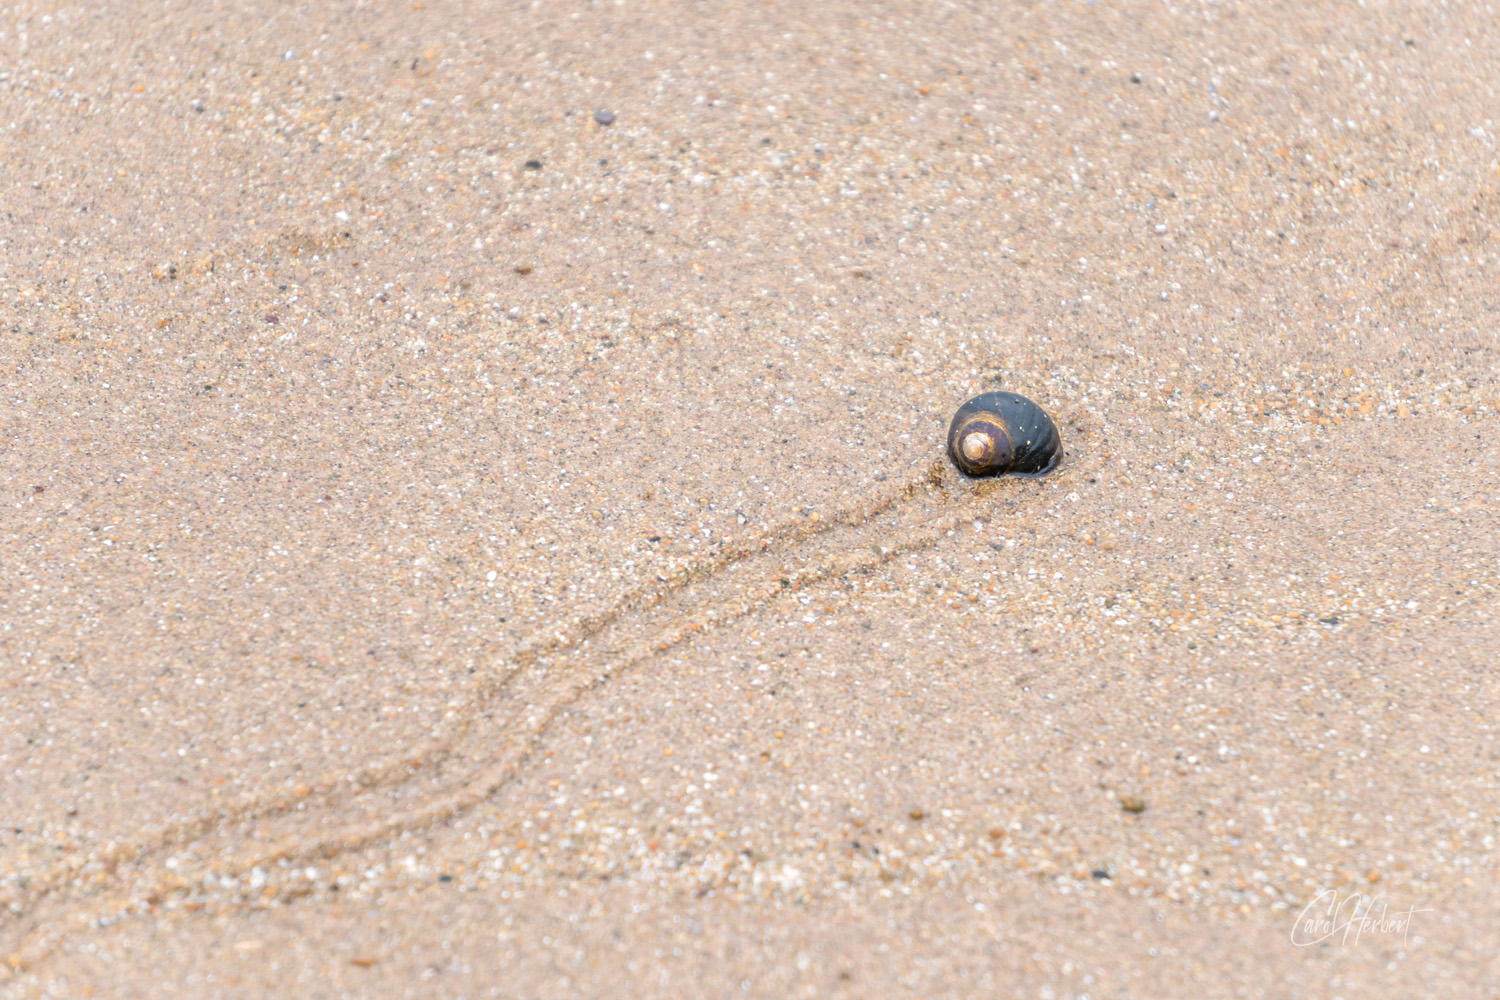 Snail on a Beach